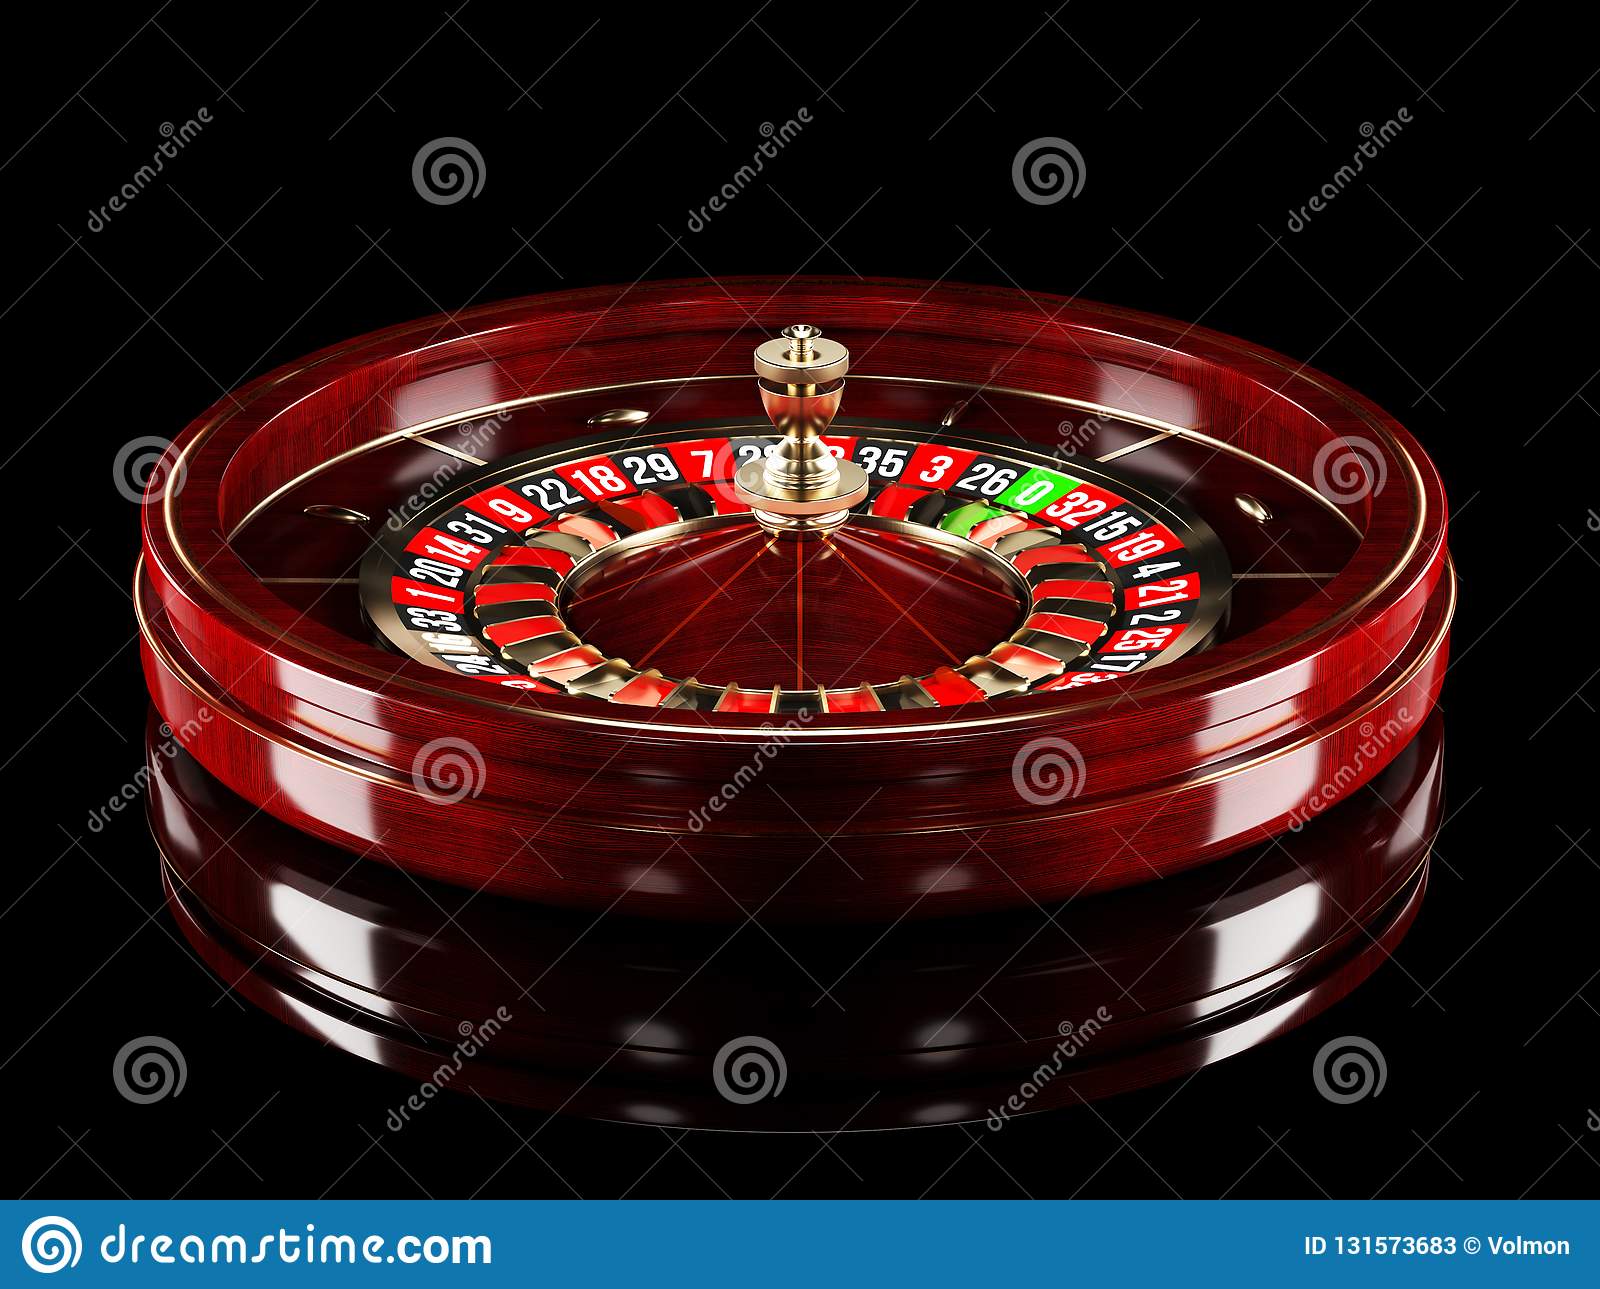 Casino sites no deposit bonus